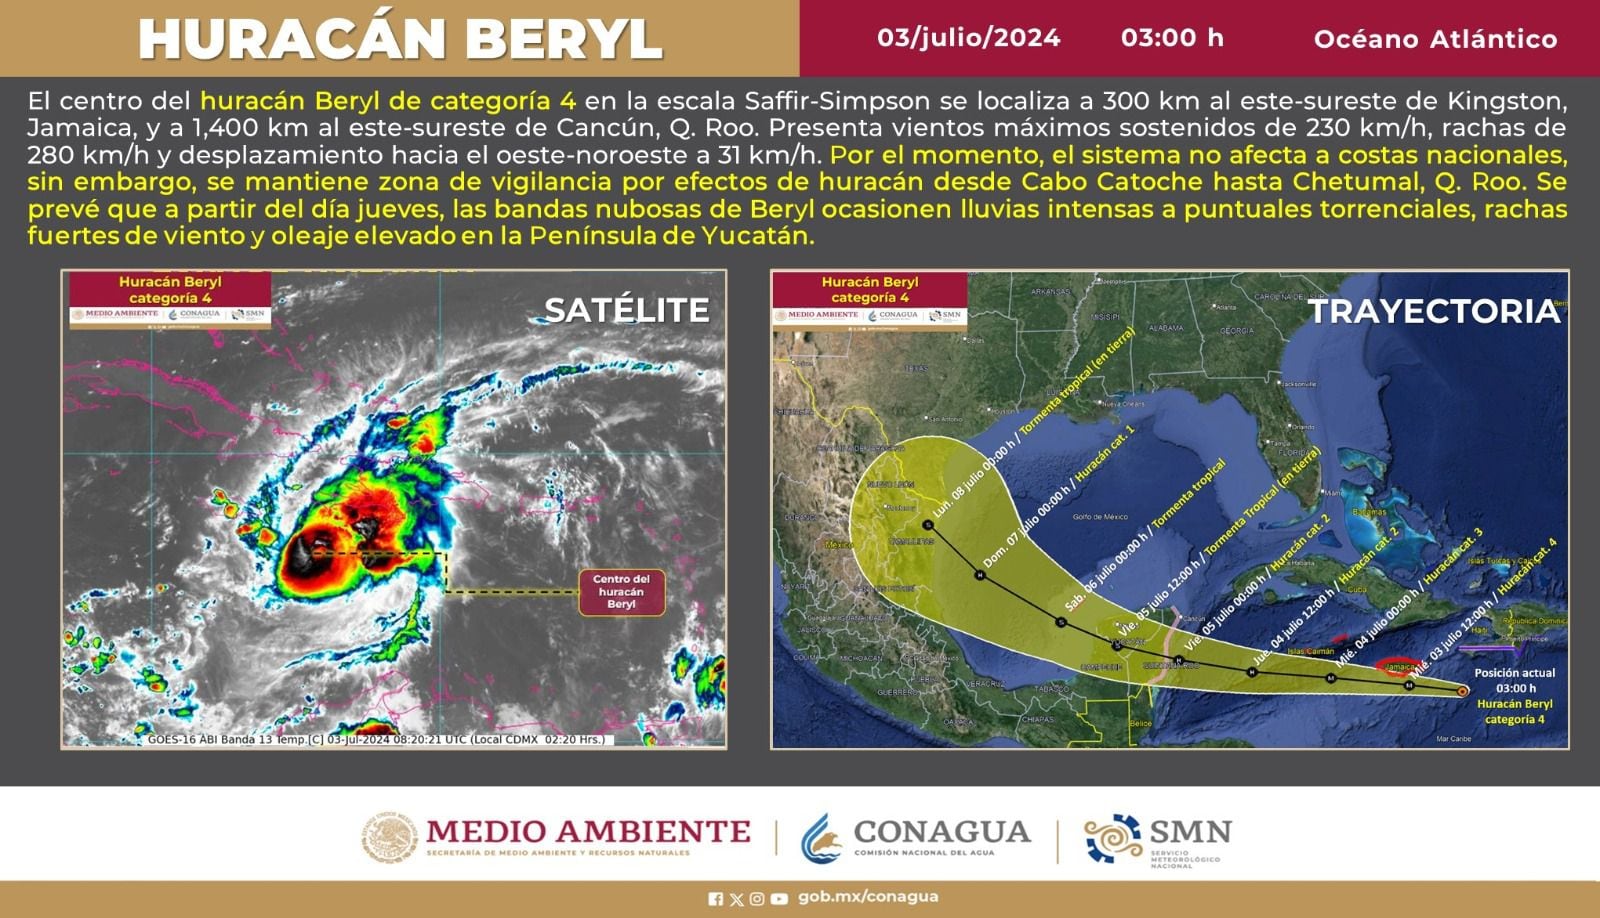 El huracán 'Beryl' por el momento no afecta a costas nacionales, sin embargo, se mantiene en vigilancia. Foto: Conagua